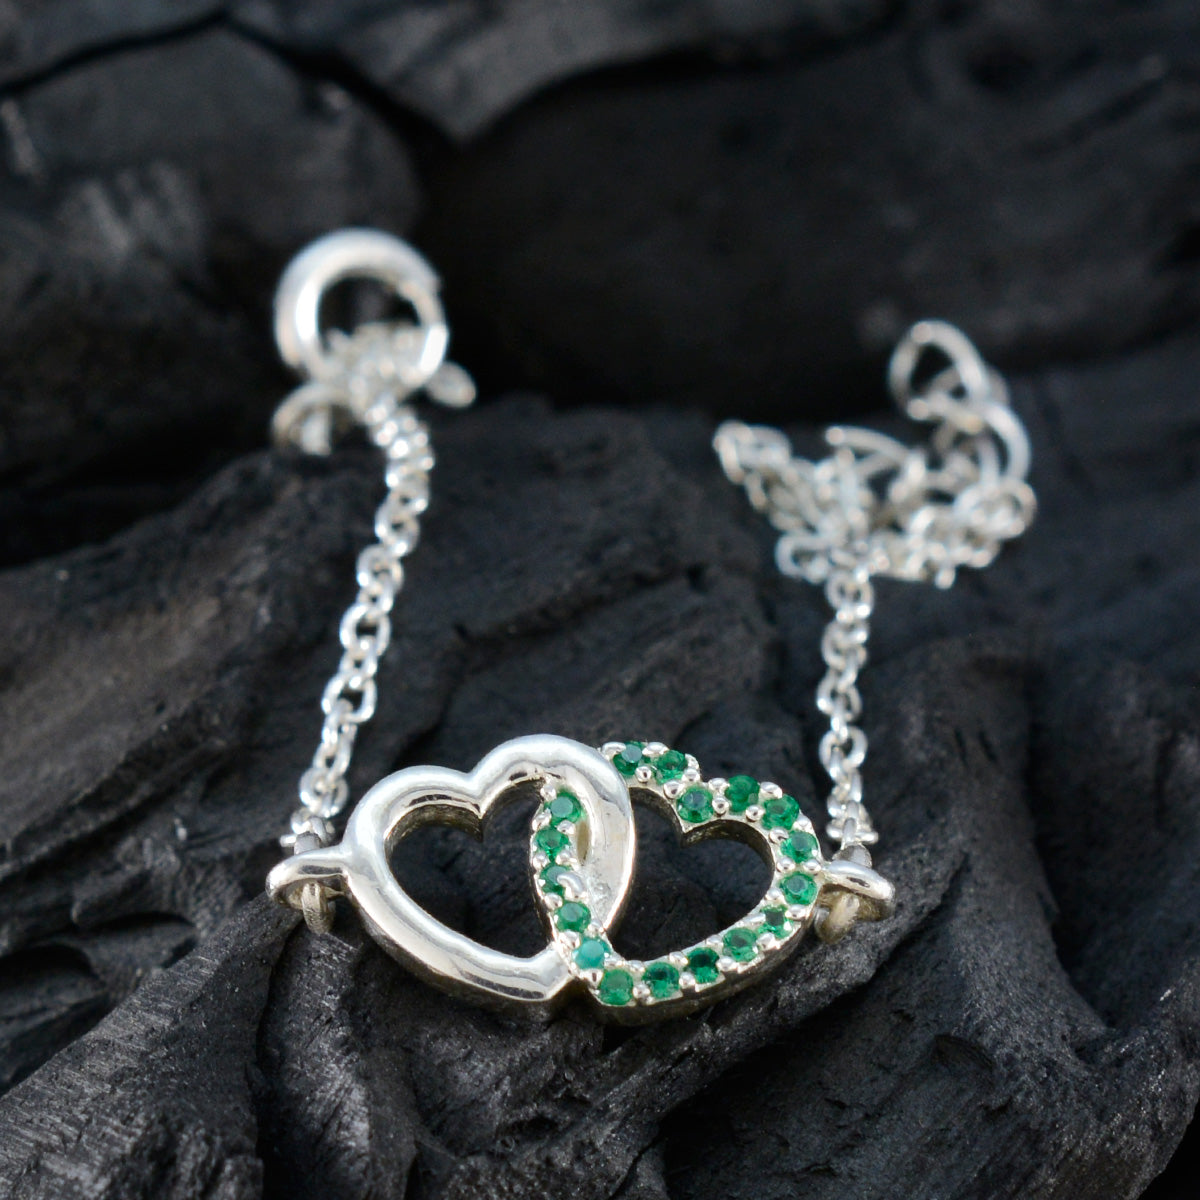 Riyo groothandel 925 sterling zilveren armband voor dames Emerald CZ armband bezel setting armband met veerring bedelarmband L maat 6-8,5 inch.